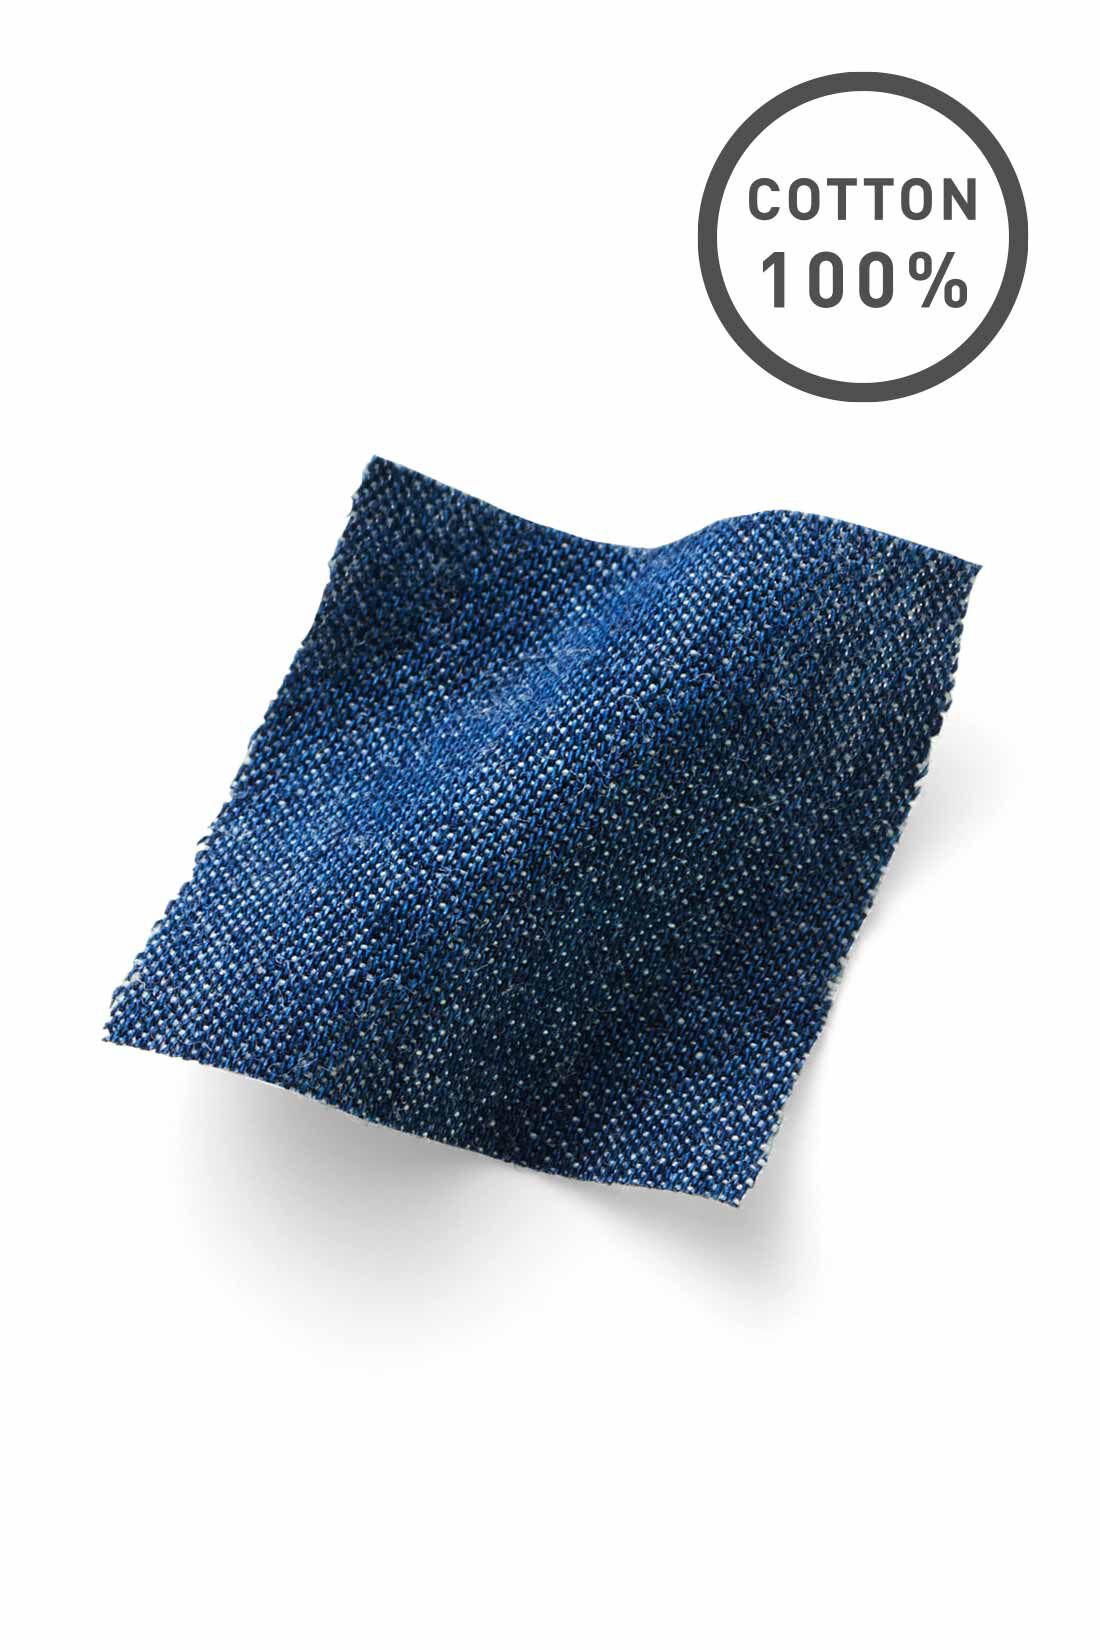 Live in  comfort|リブ イン コンフォート　雰囲気あるコーデがつくれる 綿100％の軽やかぽんわりデニムパンツ〈ブルー〉|さっくり軽やかな風合いのライトオンスの綿100％のデニム素材。